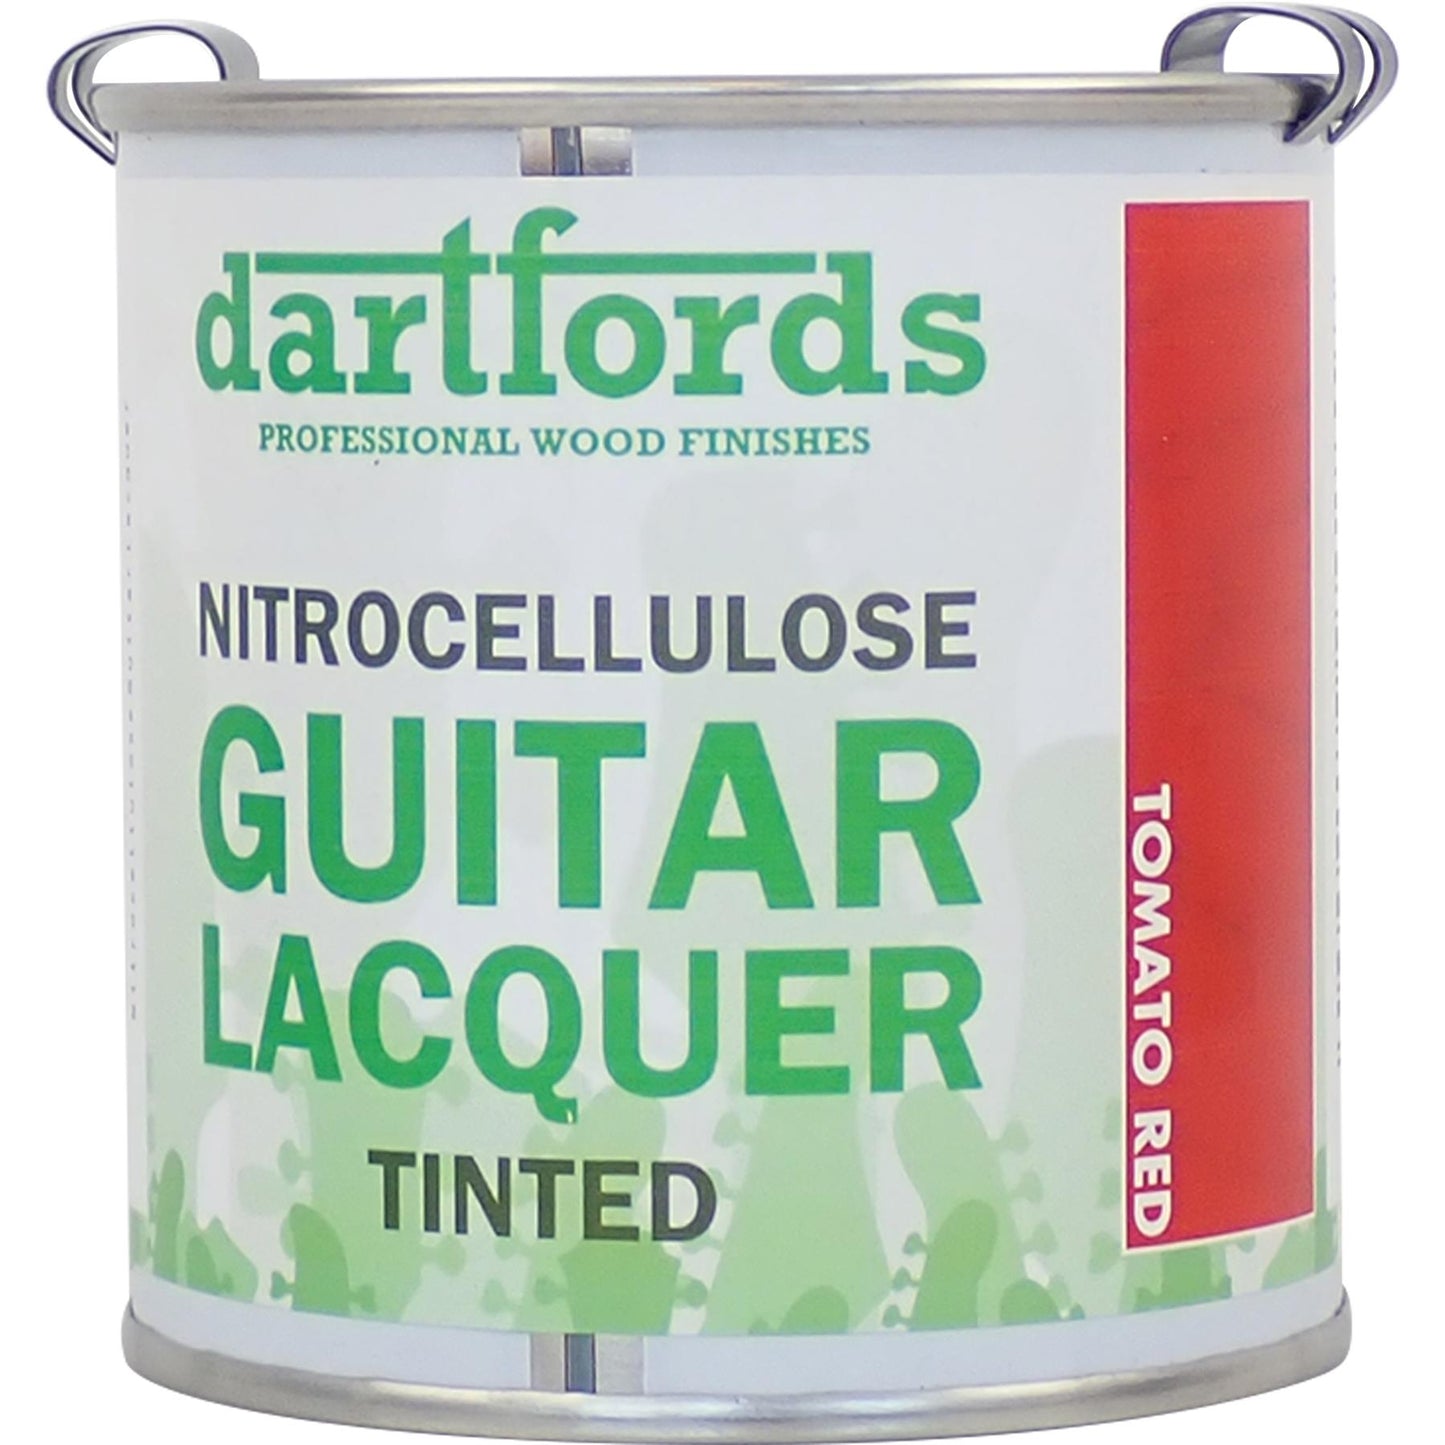 dartfords Tomato Red Nitrocellulose Guitar Lacquer - 230ml Tin